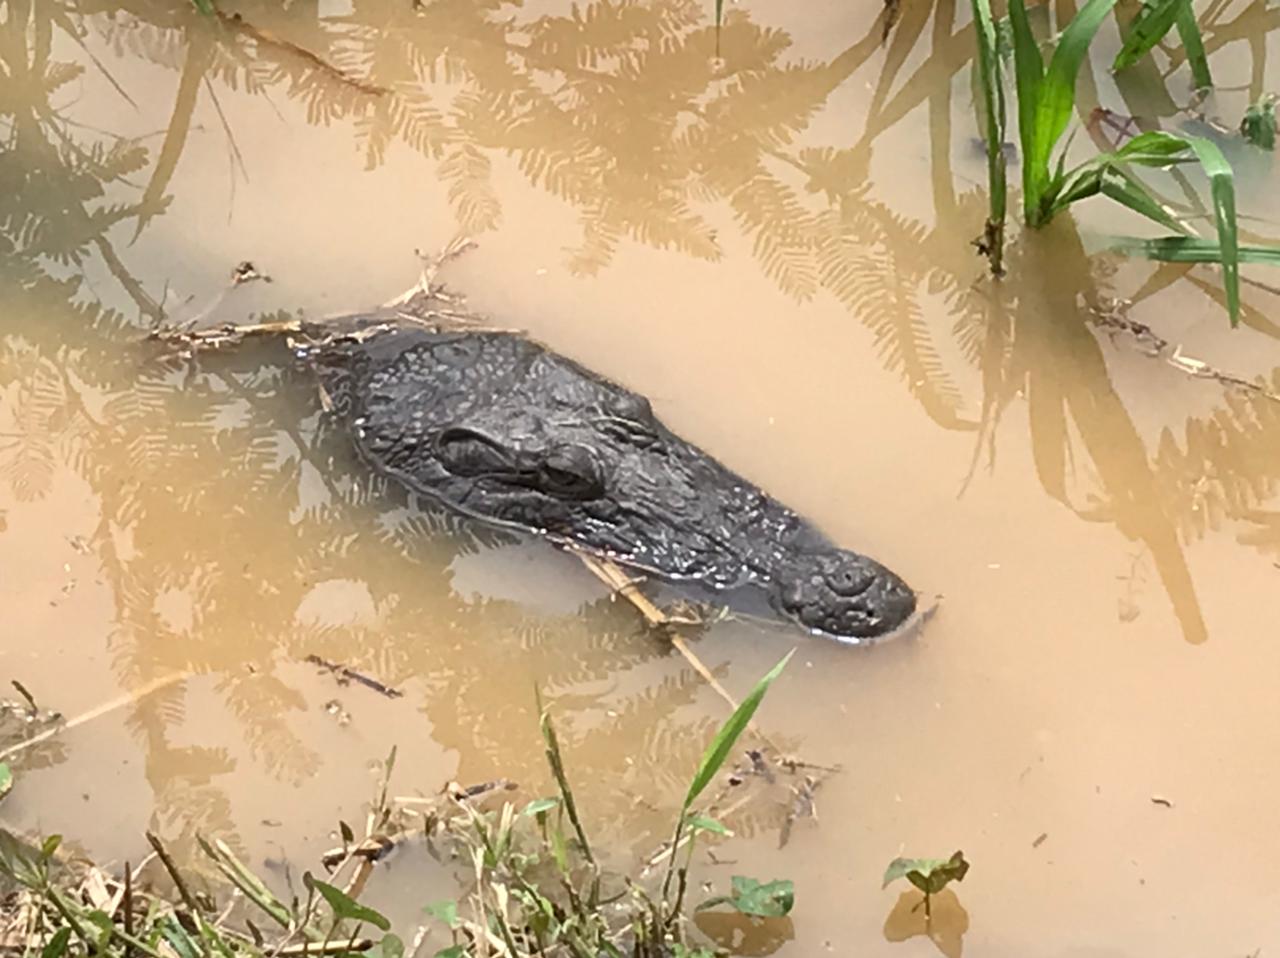     [PHOTOS] Le crocodile du Lamentin refait surface

